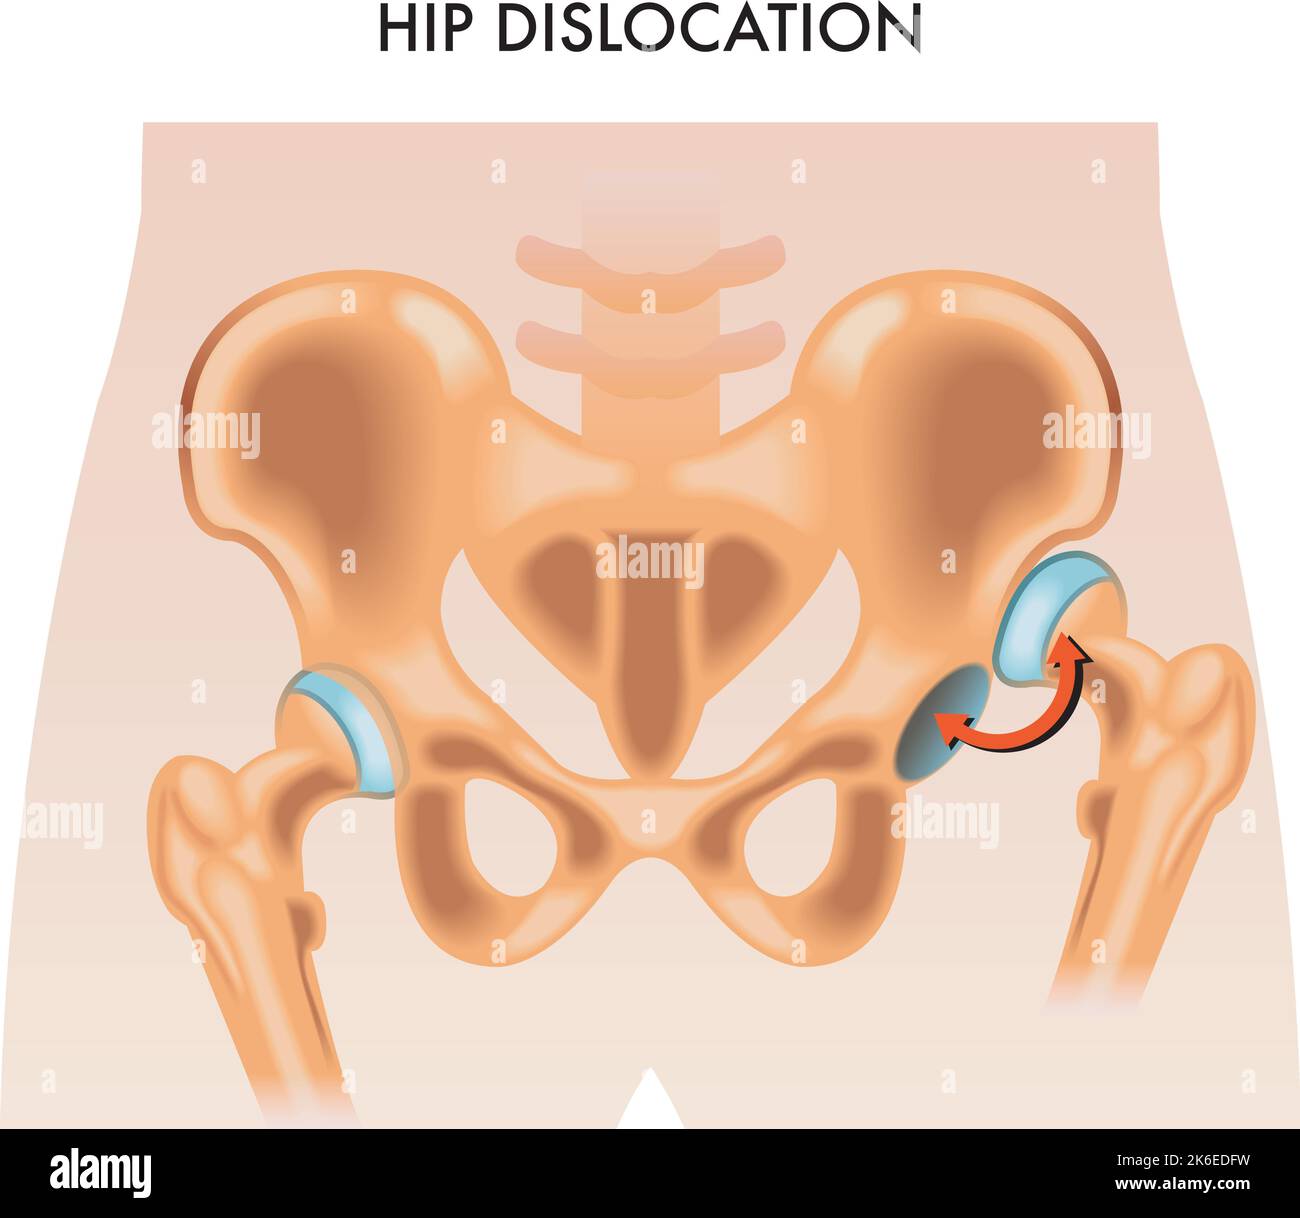 Illustrazione medica della dislocazione dell'anca. Illustrazione Vettoriale